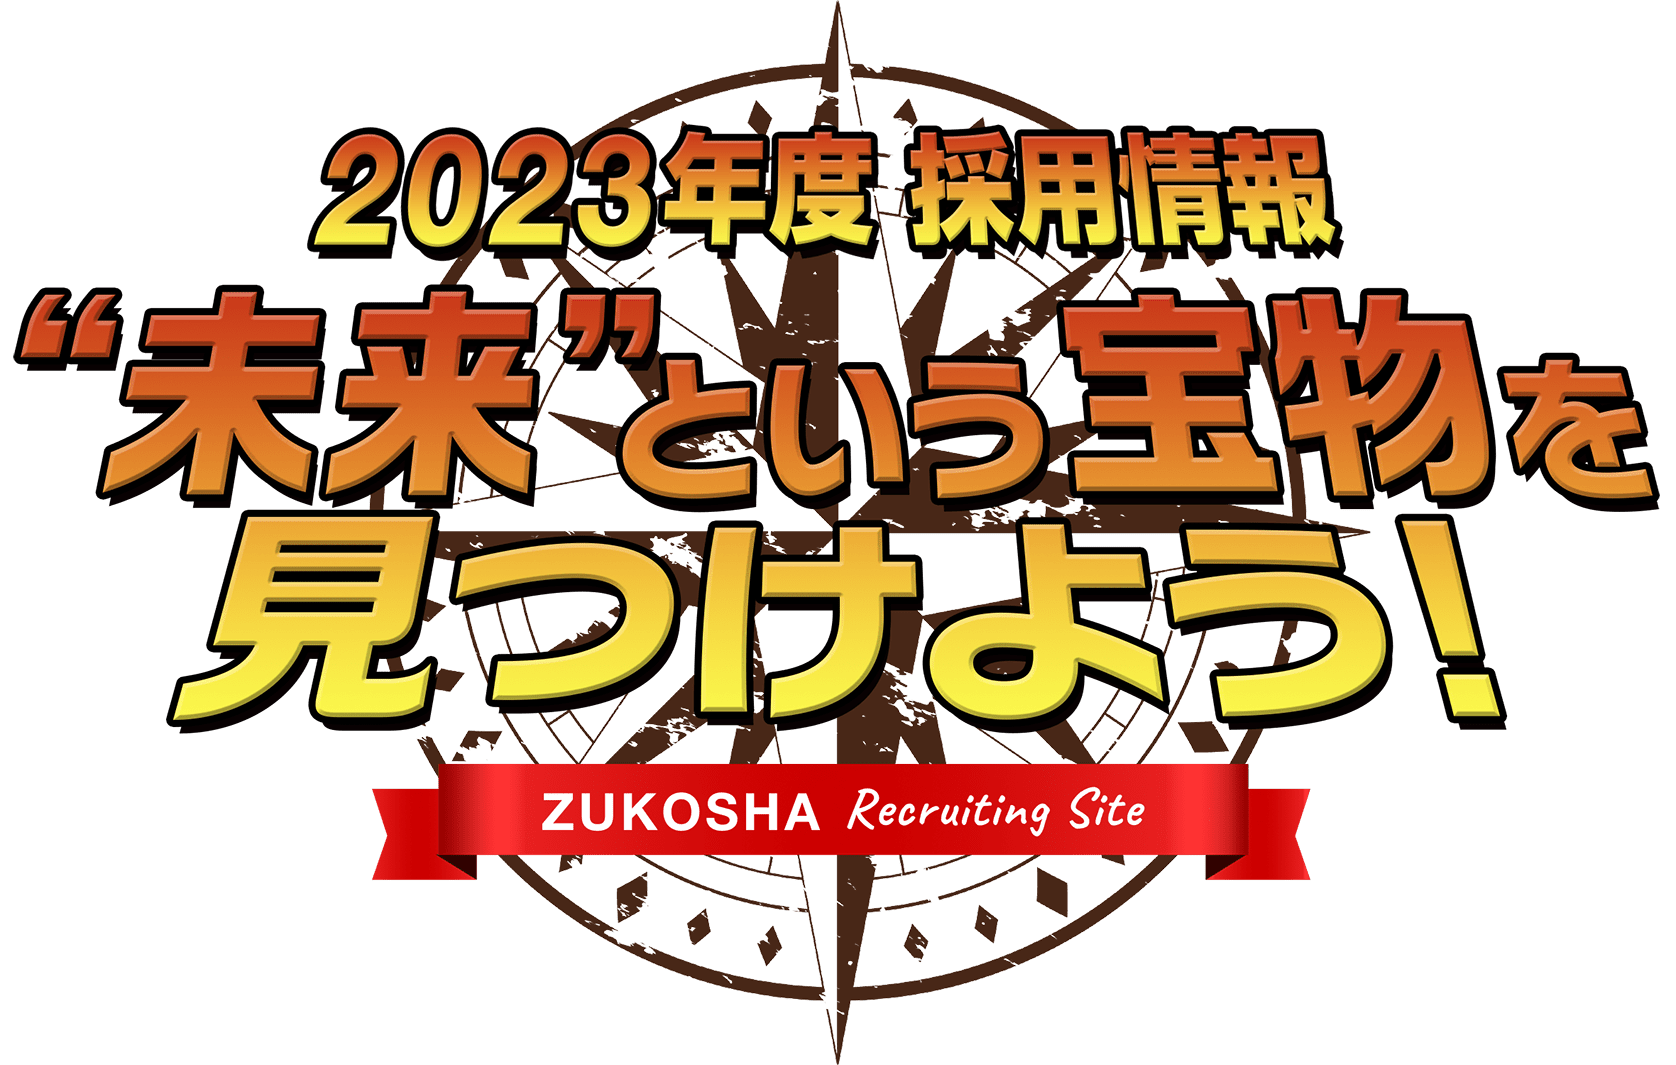 2021年度 採用情報 “未来”という宝物を見つけよう！ZUKOSHA Recruiting Site